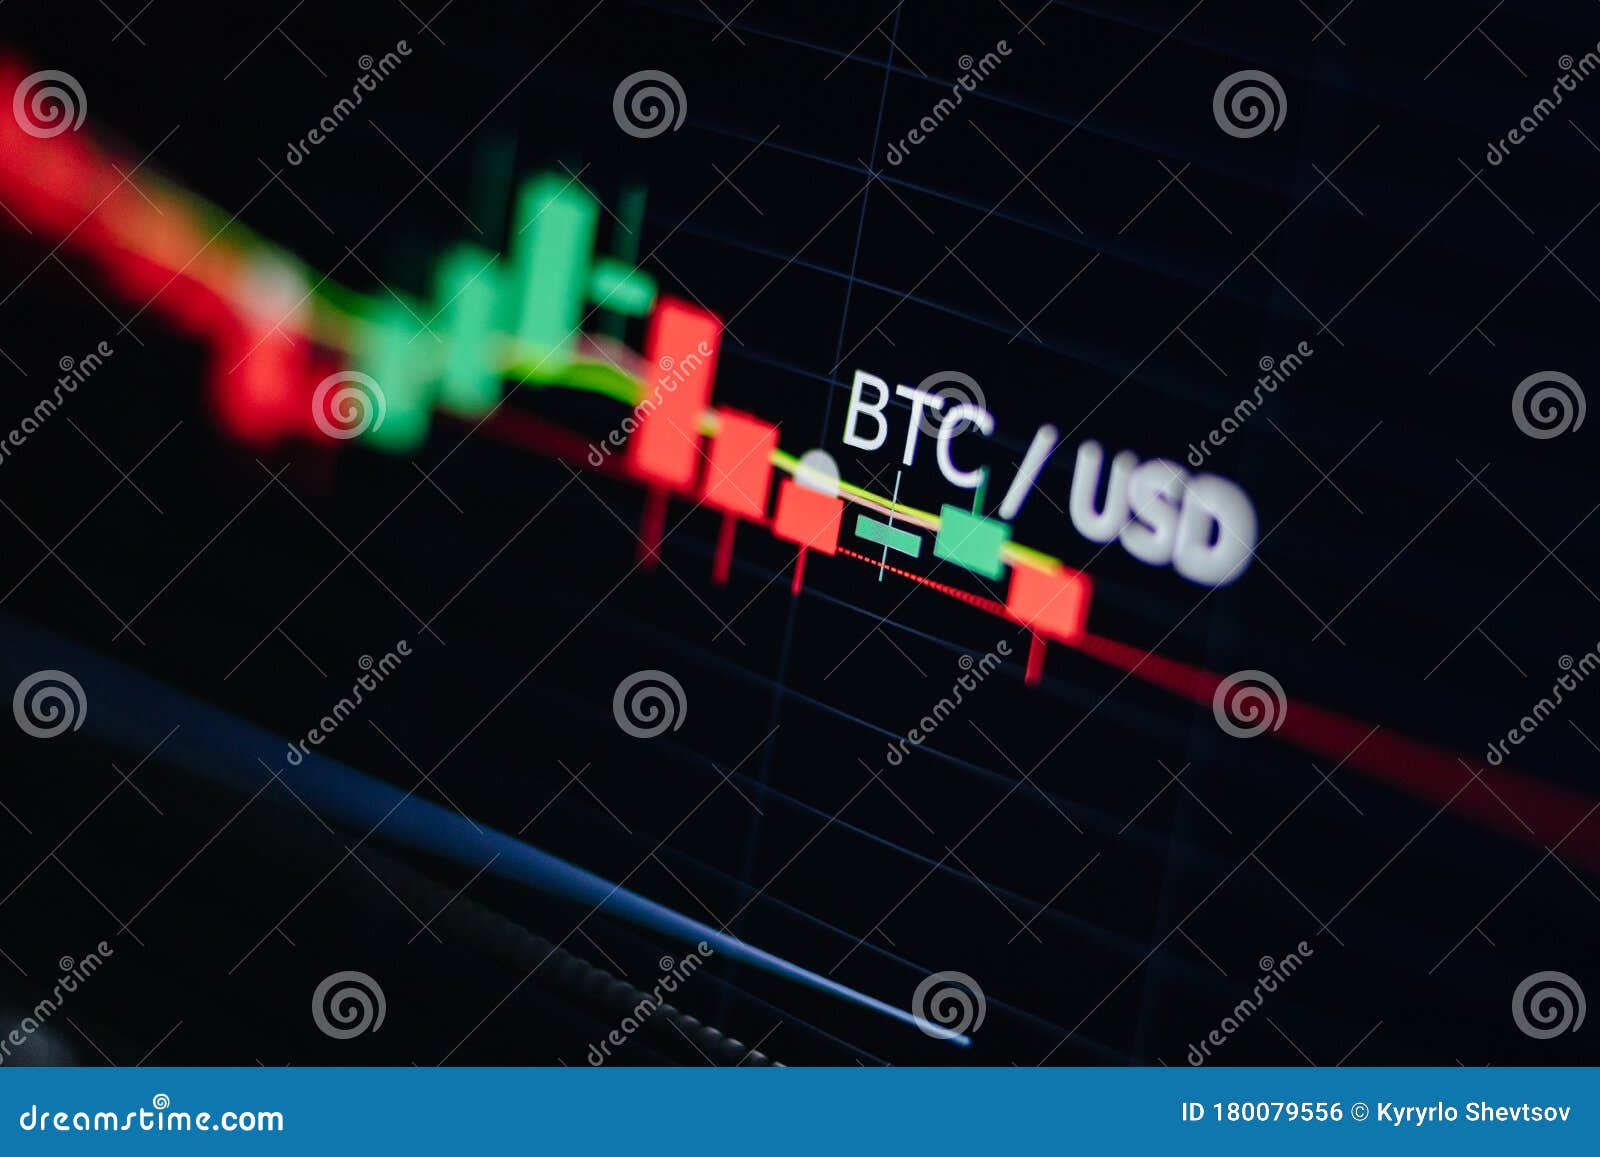 trade btc usd come funziona il trading con bitcoin